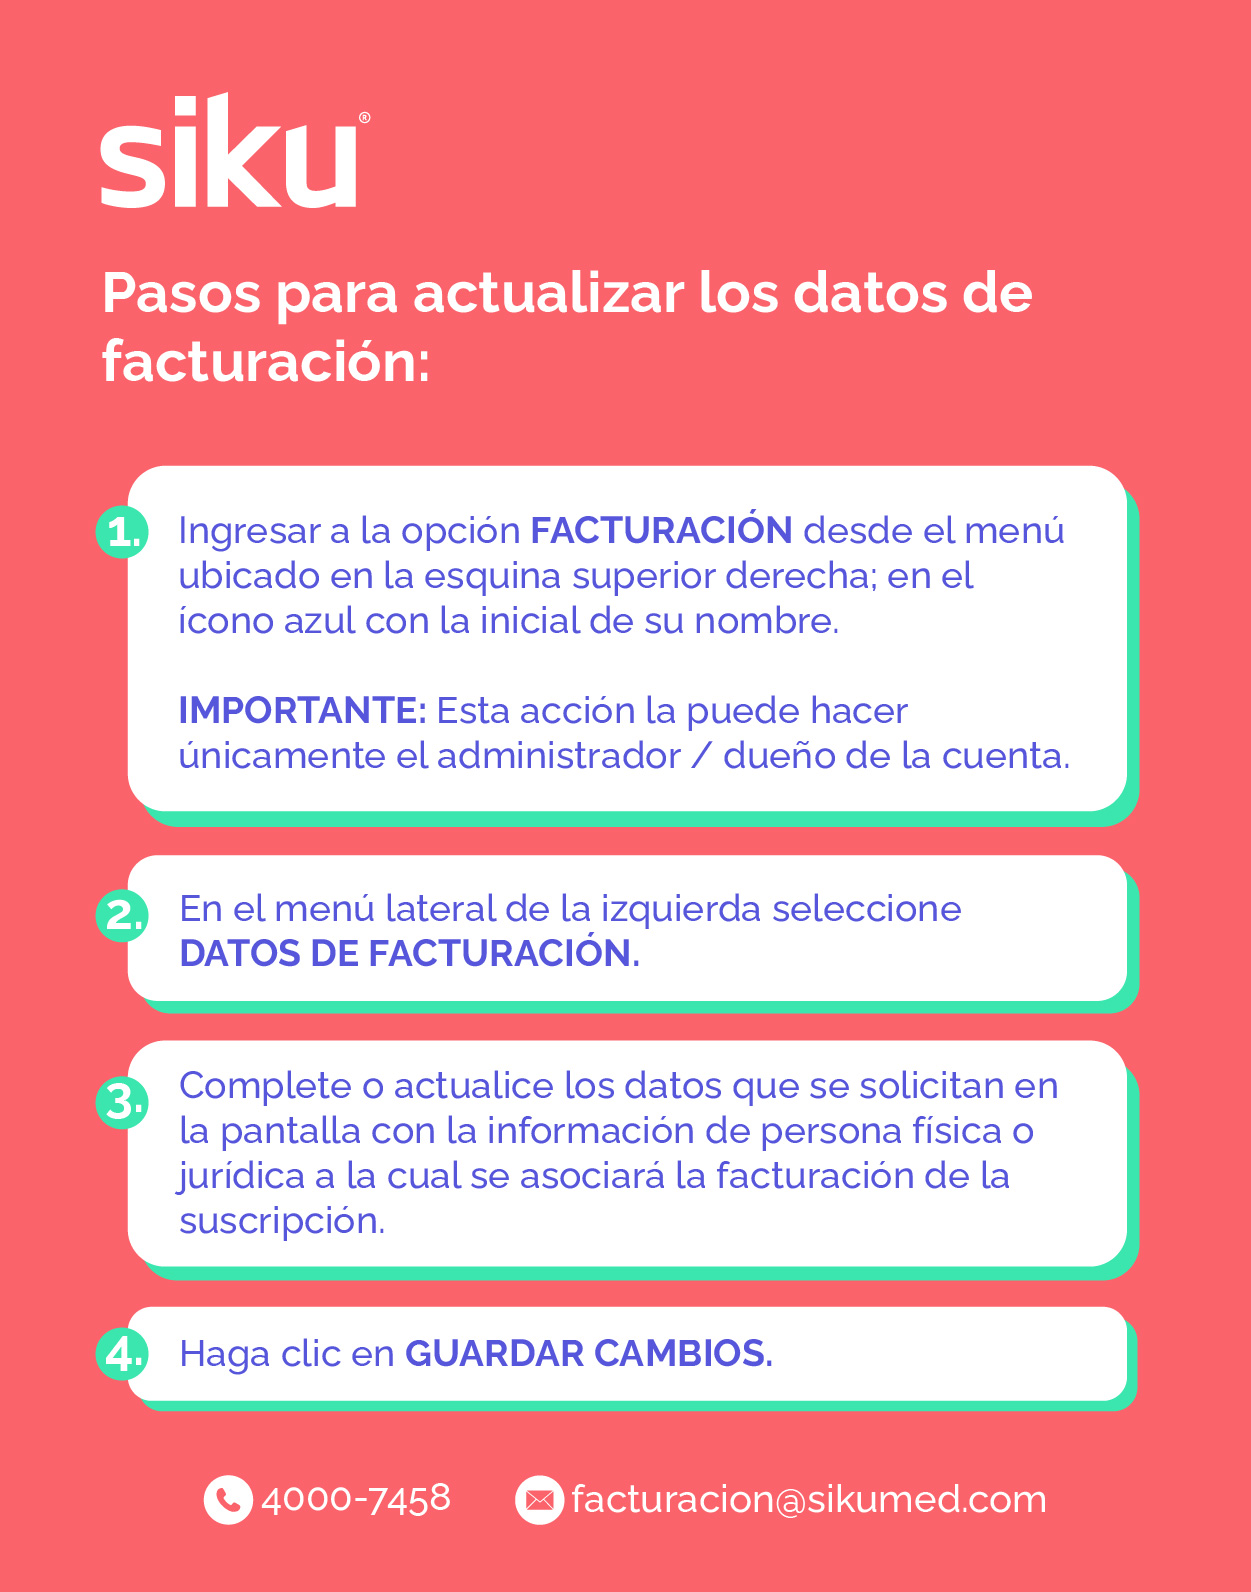 Instructivo_SIKU__actualizaci_n_de_datos_en_facturaci_n.jpg